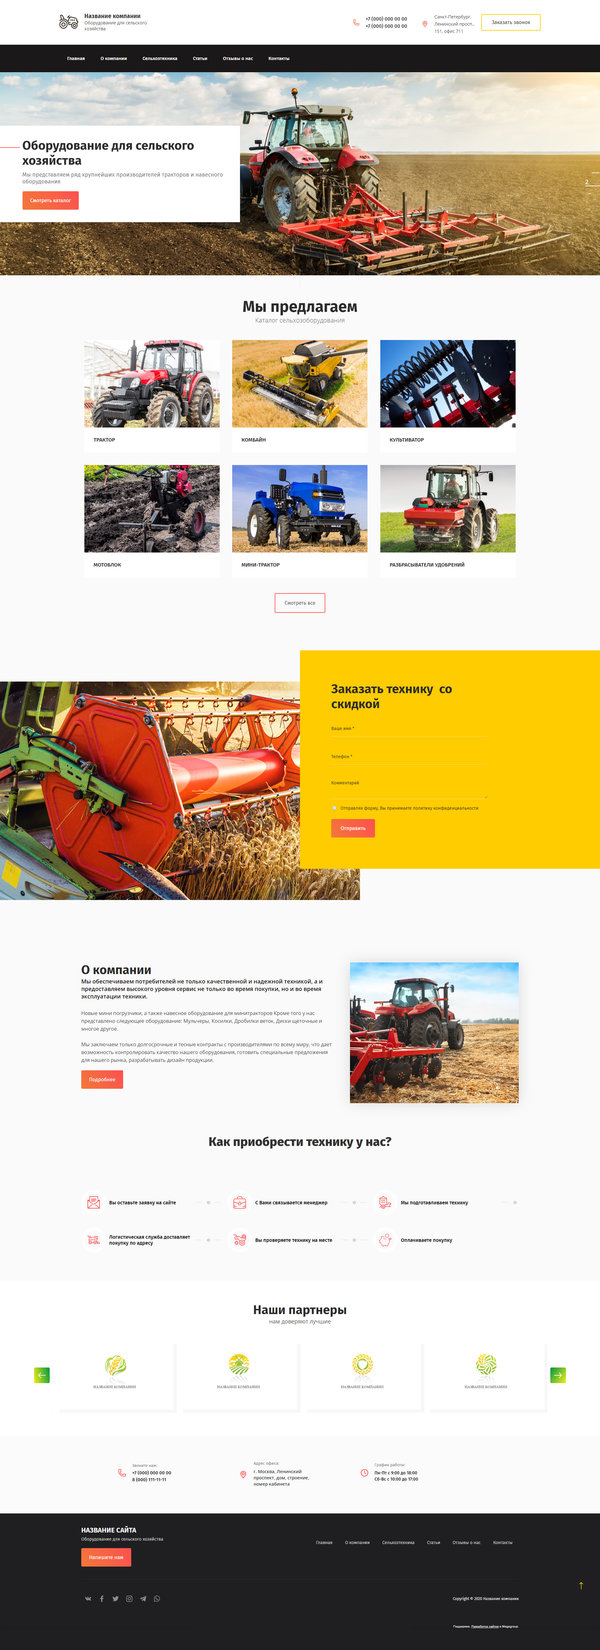 Готовый Сайт-Бизнес № 2665268 - Оборудование для сельского хозяйства (Десктопная версия)